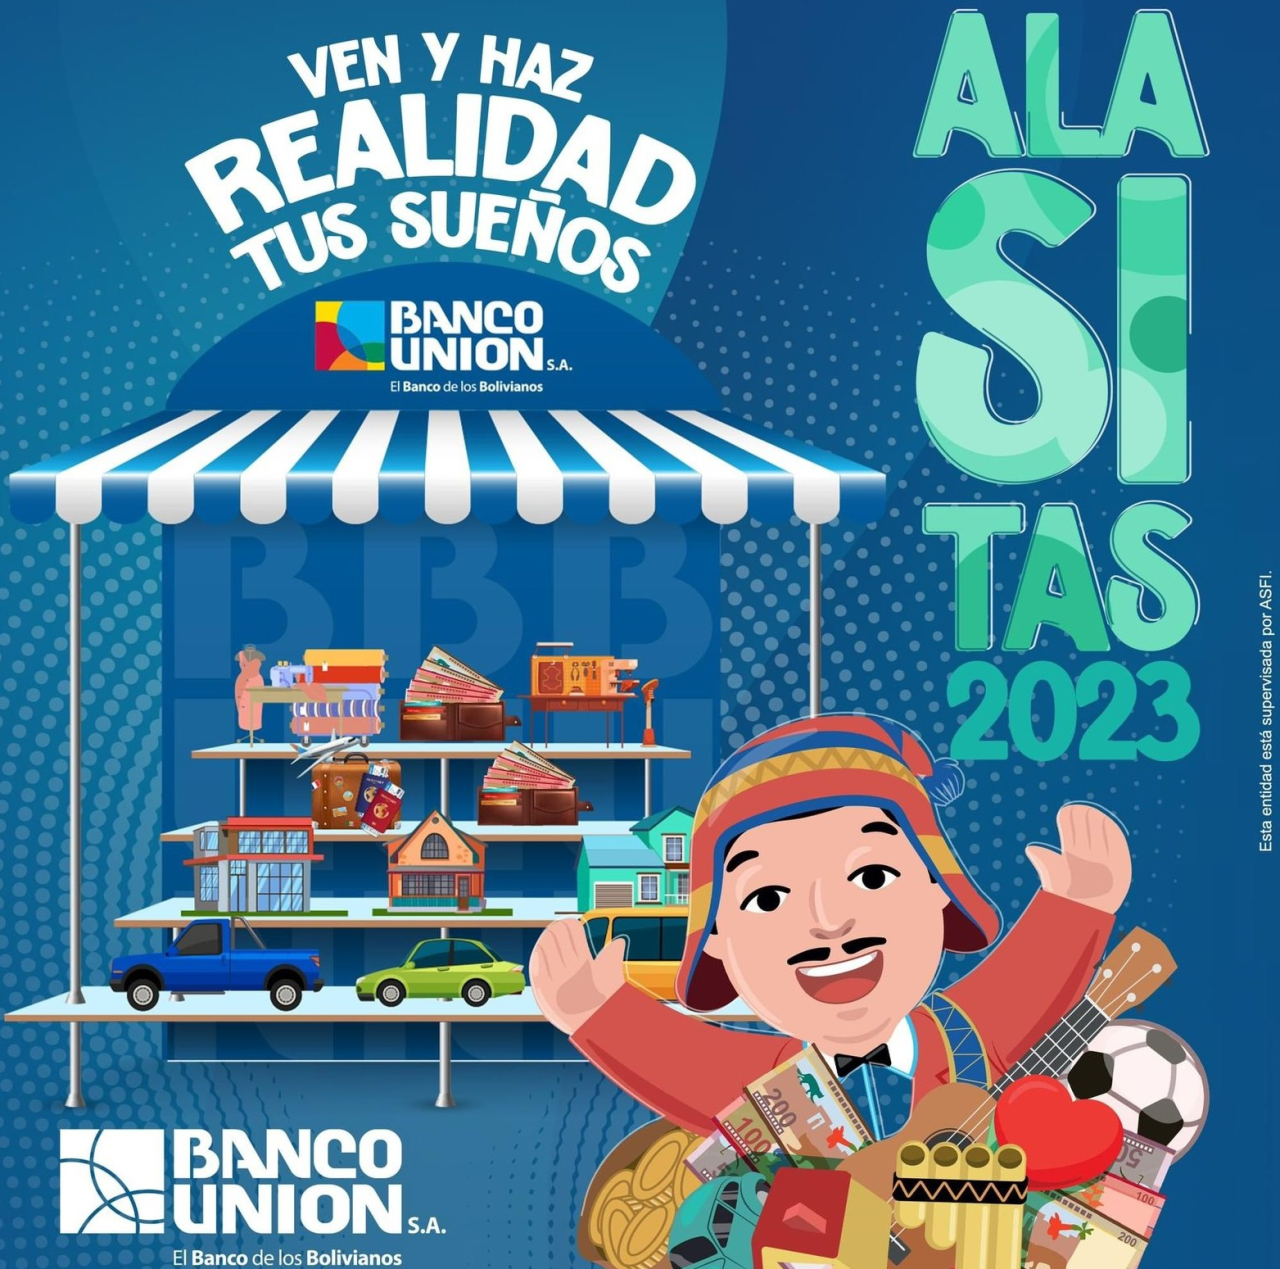 Banco Unión invita este 24 de enero al “mercadito en miniatura” en la ciudad de La Paz